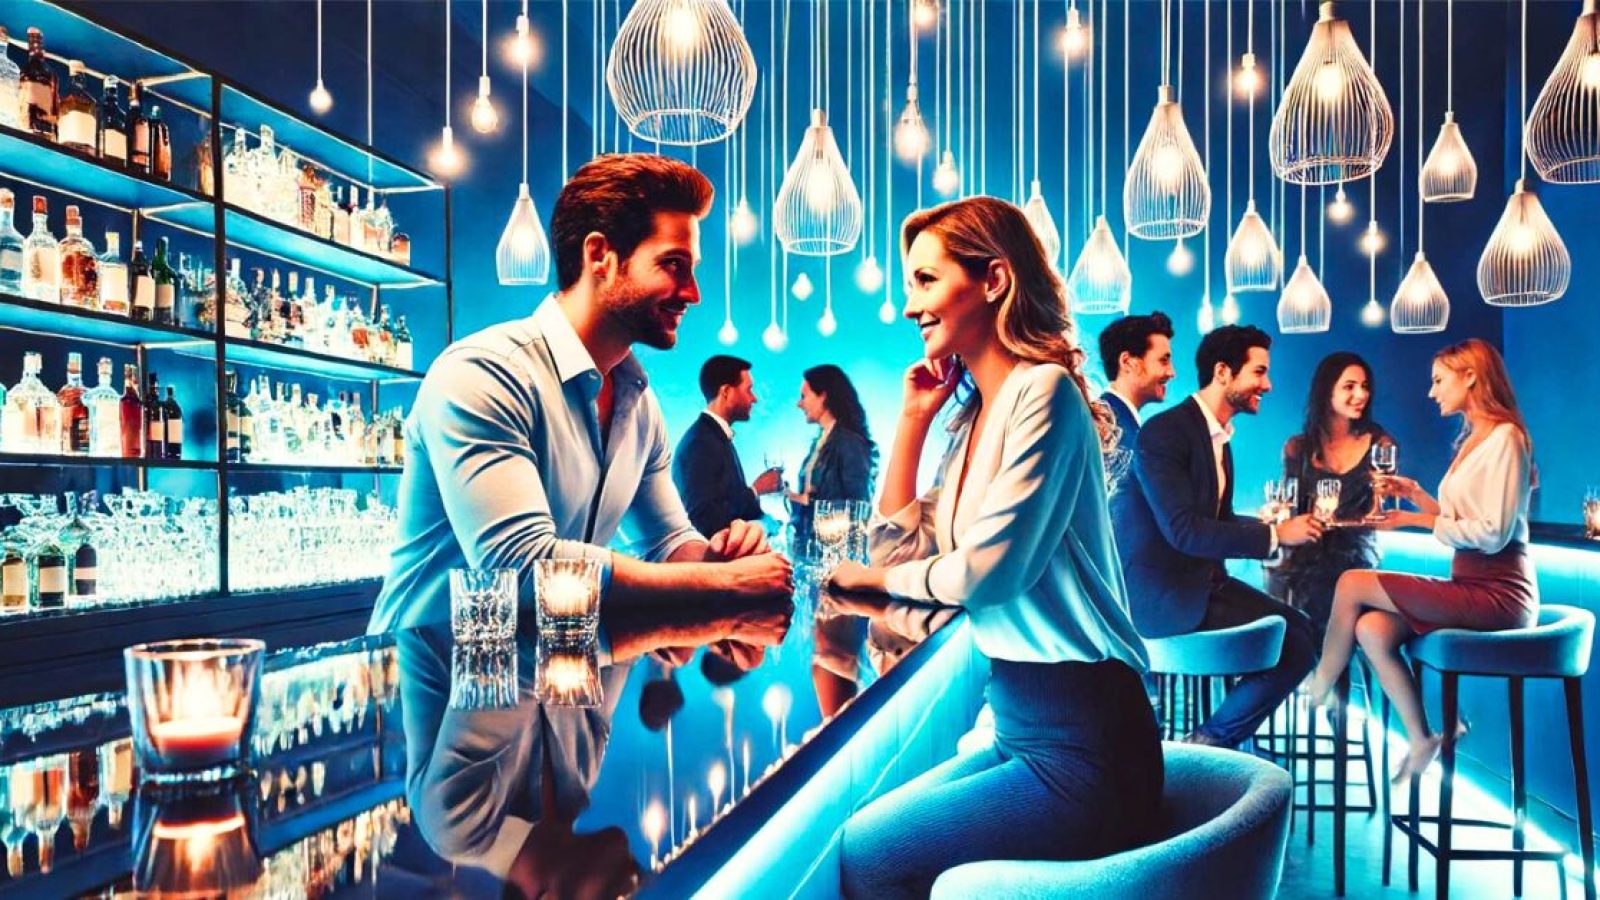 Man and woman flirting at singles event at a bar